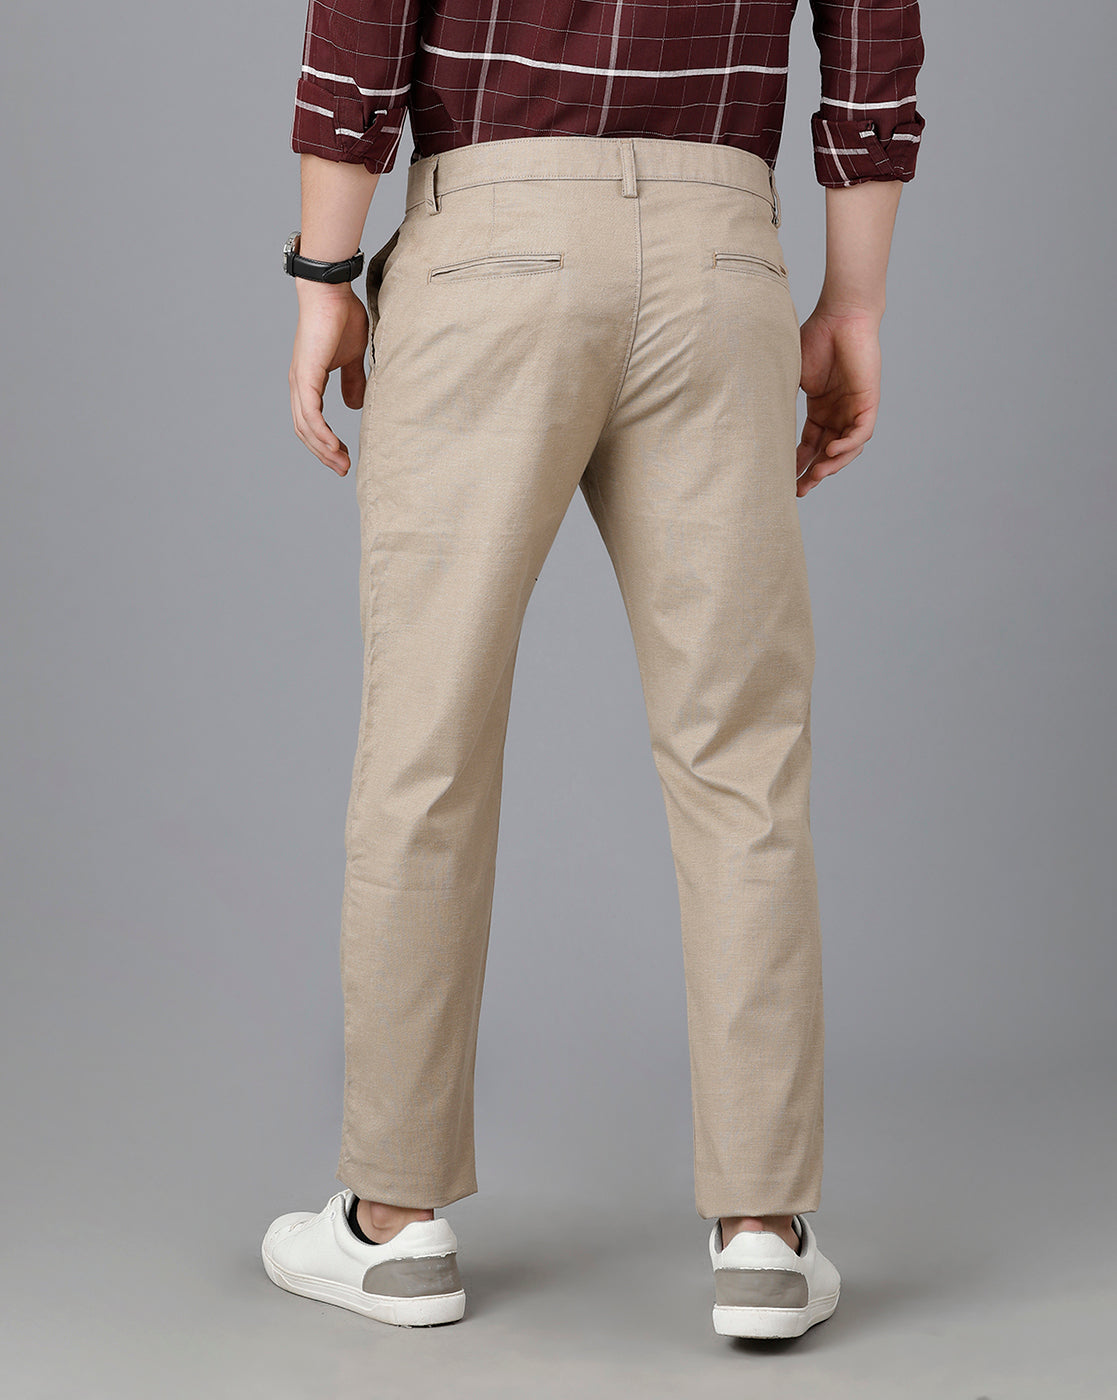 Classic Polo Mens Cotton Solid Slim Fit Khaki Color Trouser